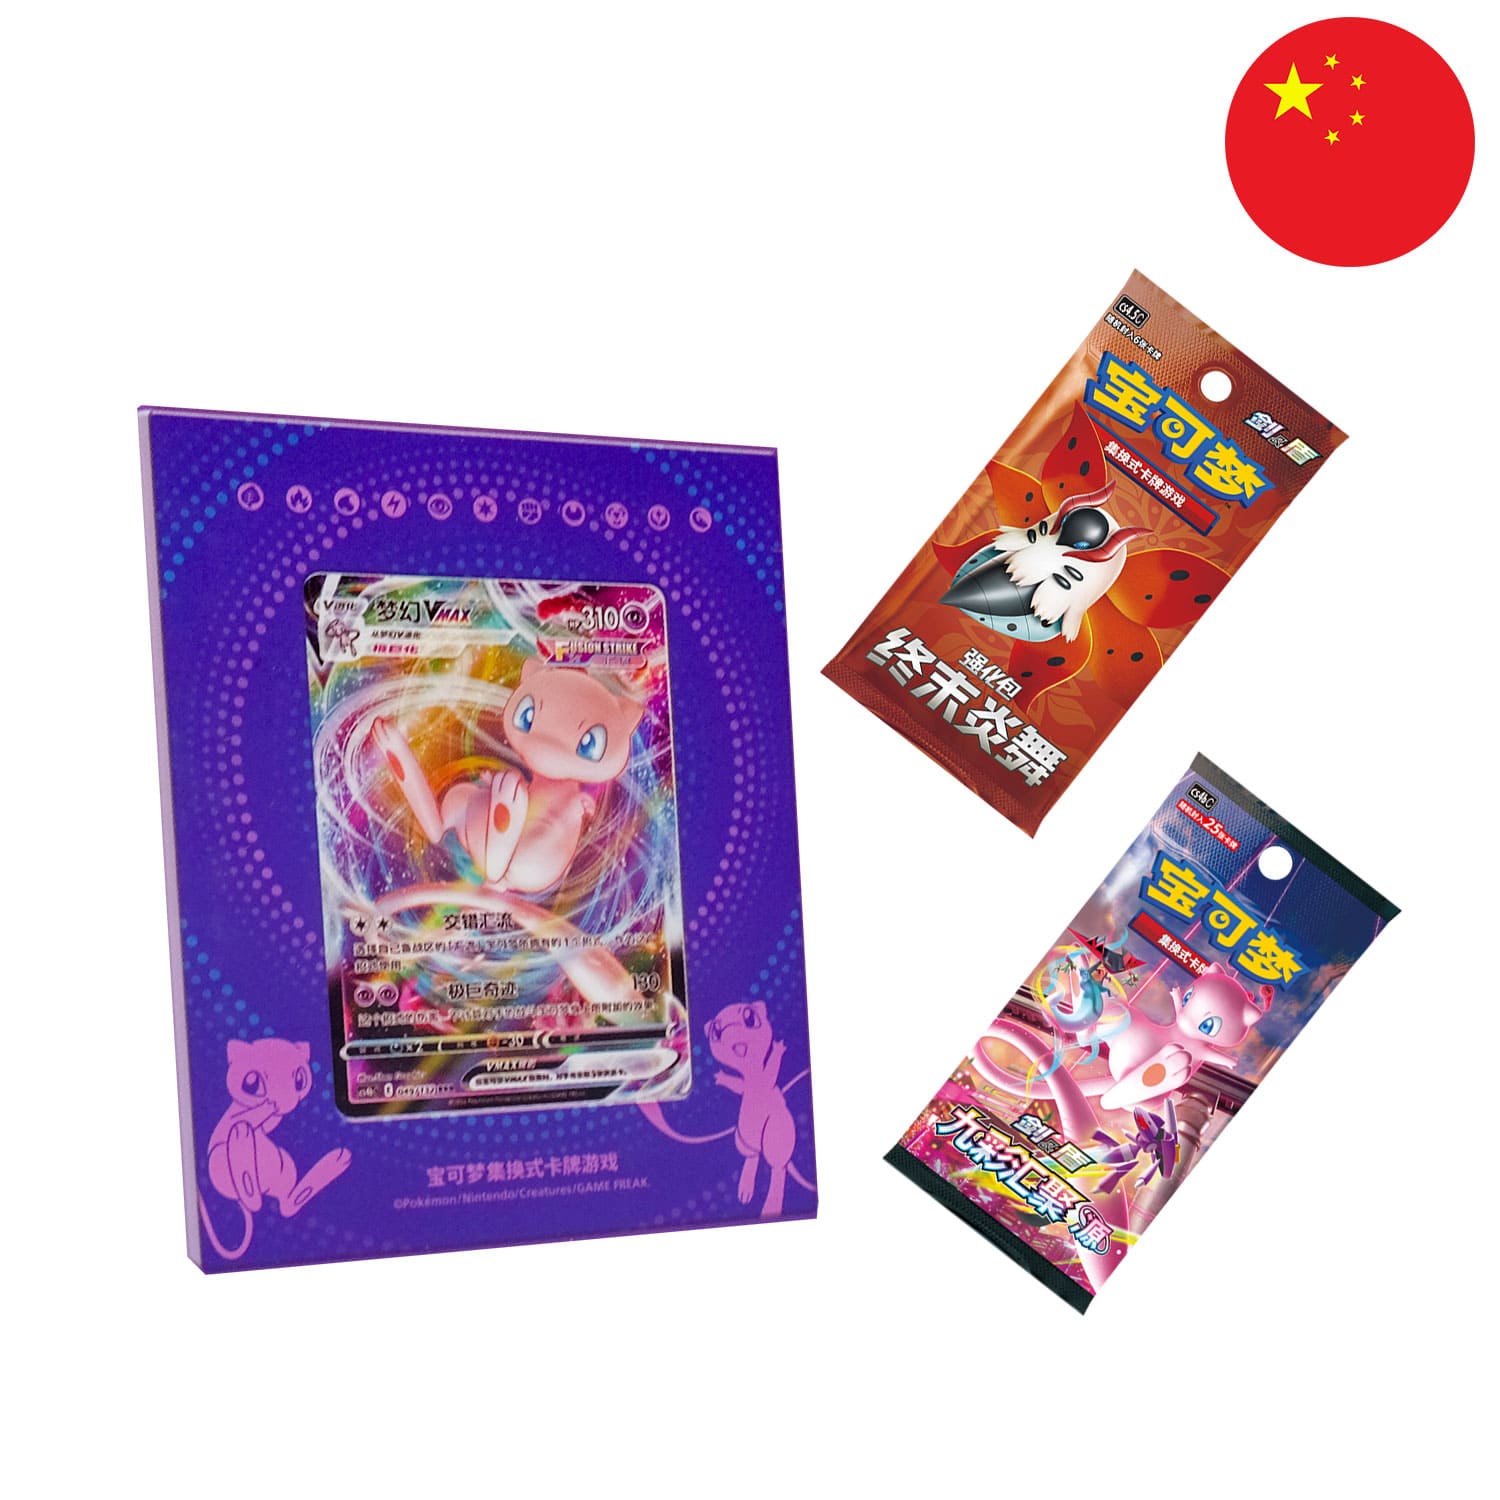 Der Inhalt von der Mew Kartenhalter Box (CS4.5DF2), sortiert und aneinandergereiht, mit der Flagge Chinas in der Ecke.